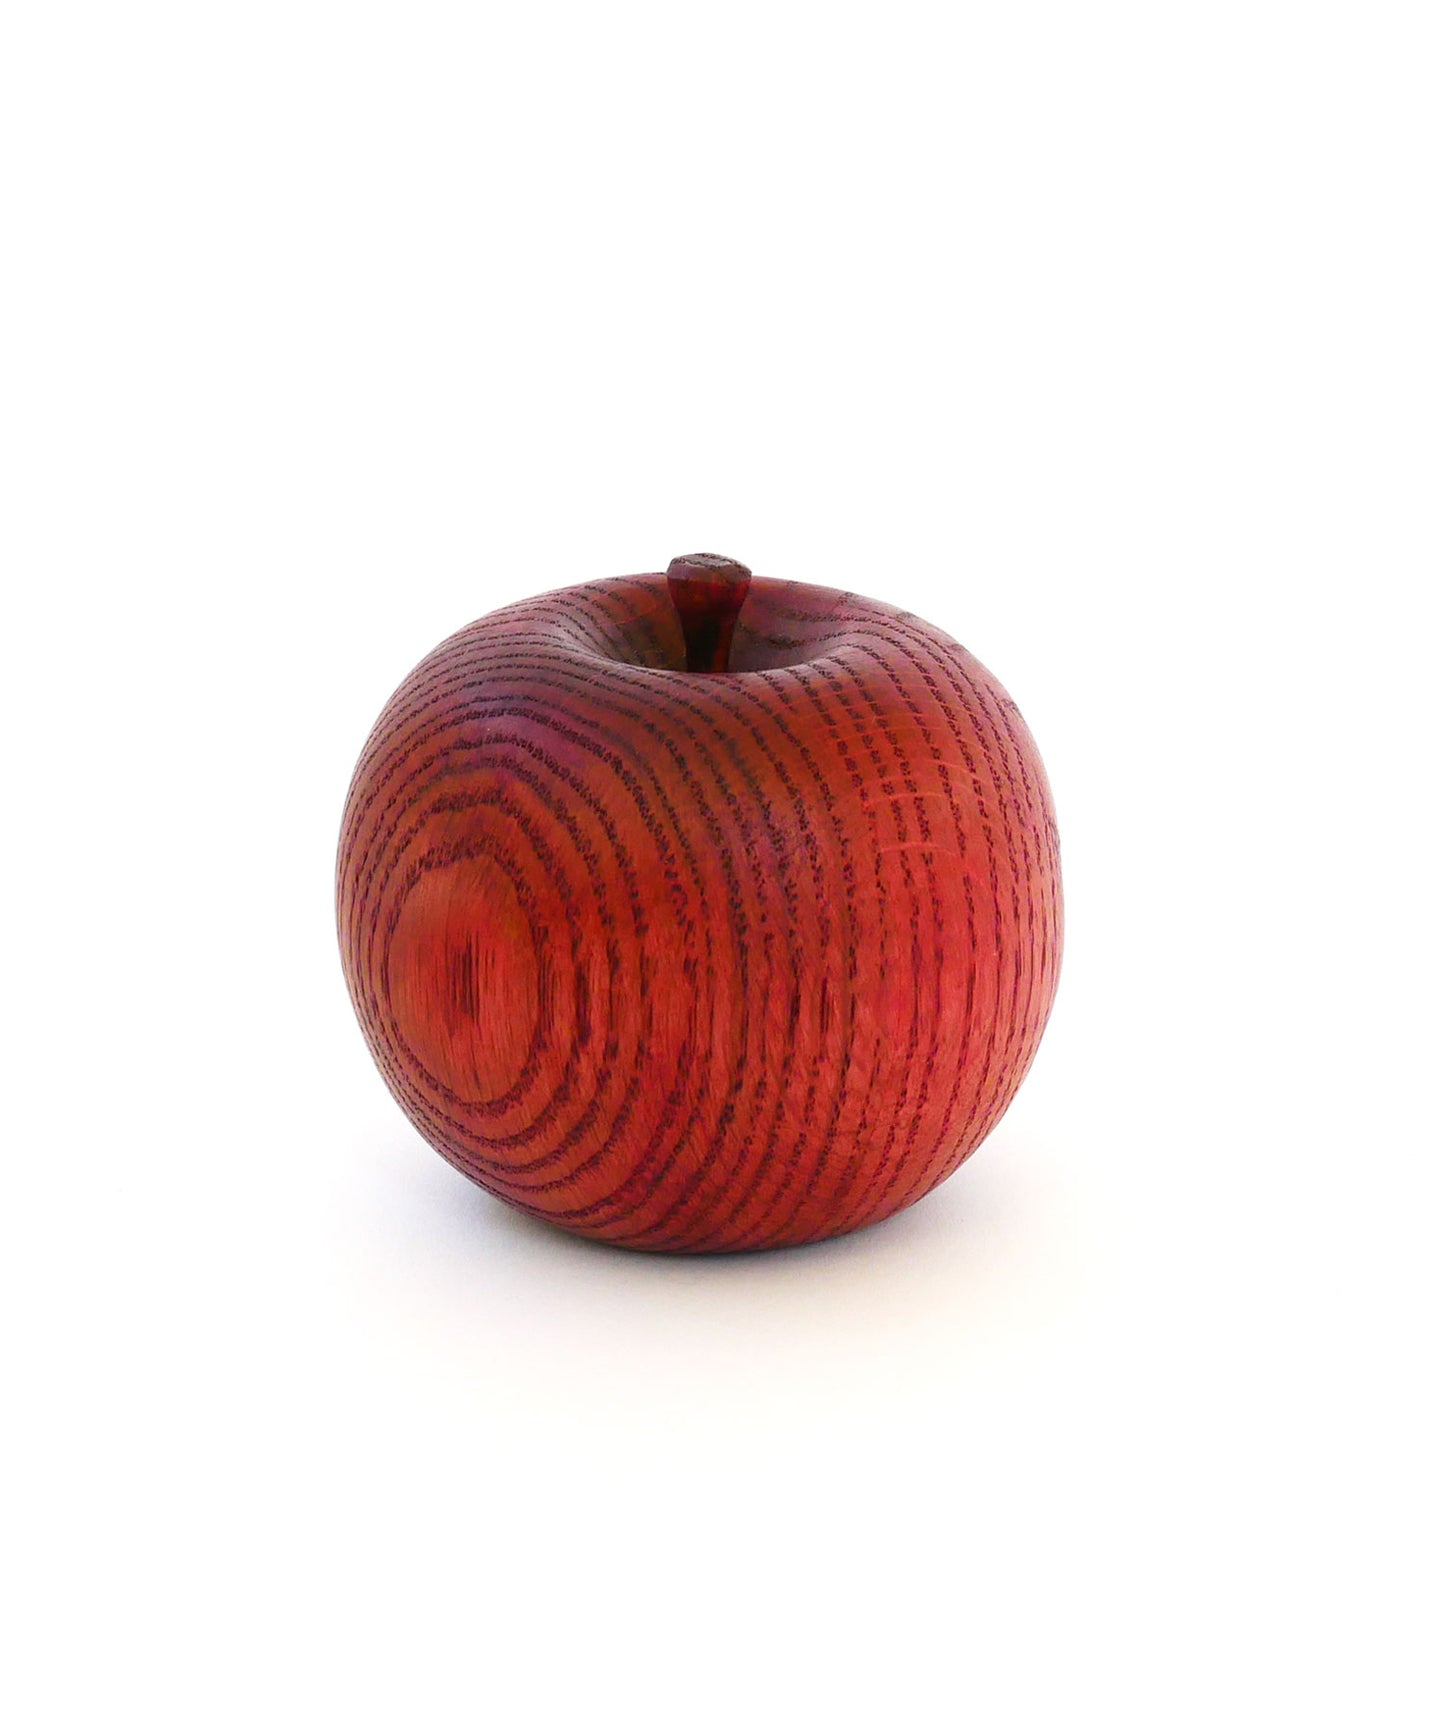 どんぐりの木のリンゴのオブジェ